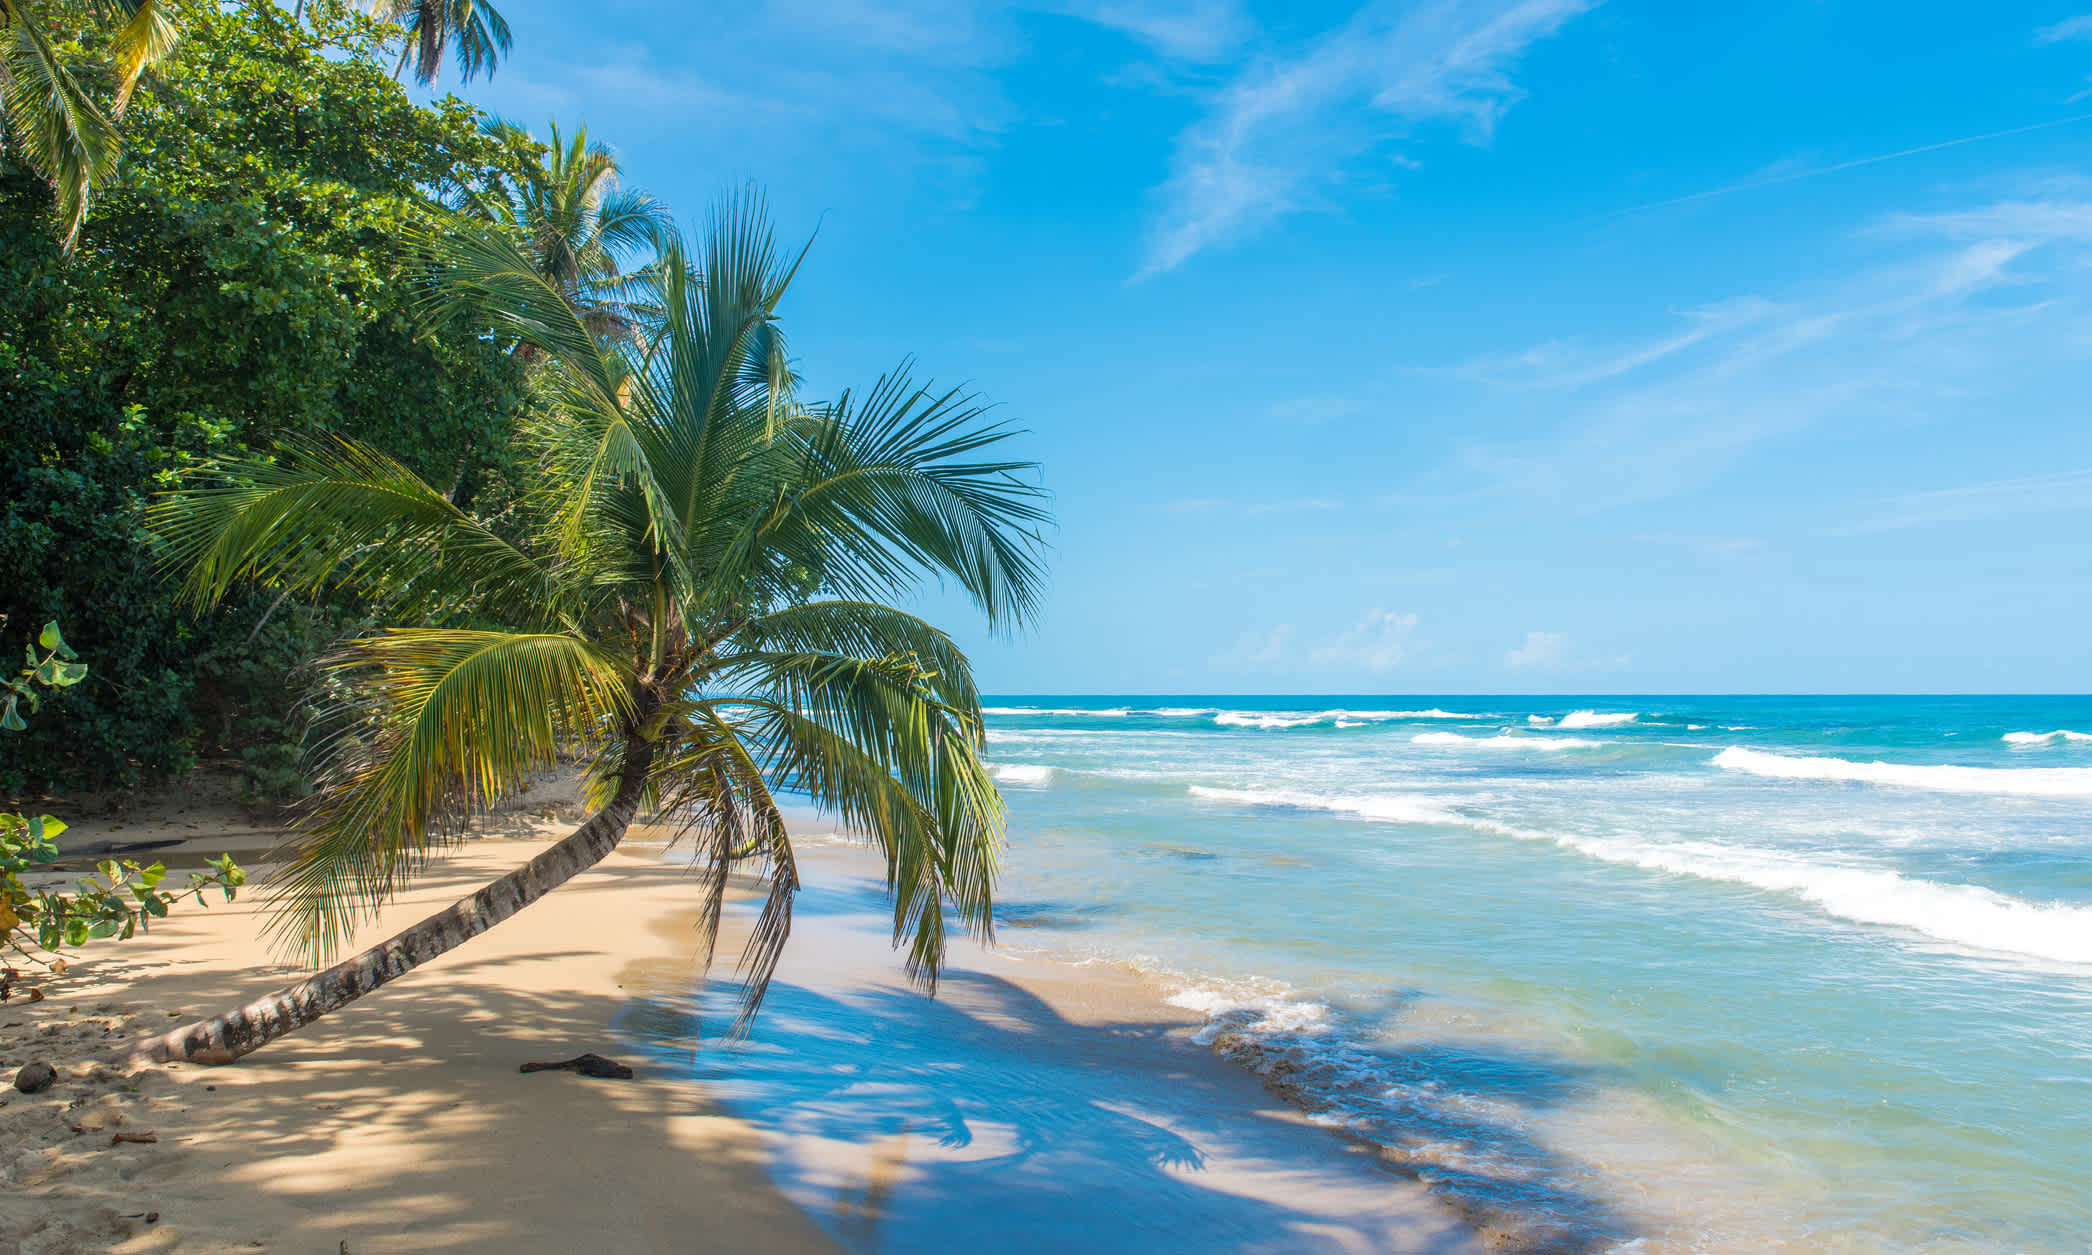 Les vacances à la plage au Costa Rica, c'est mieux pendant la saison sèche.